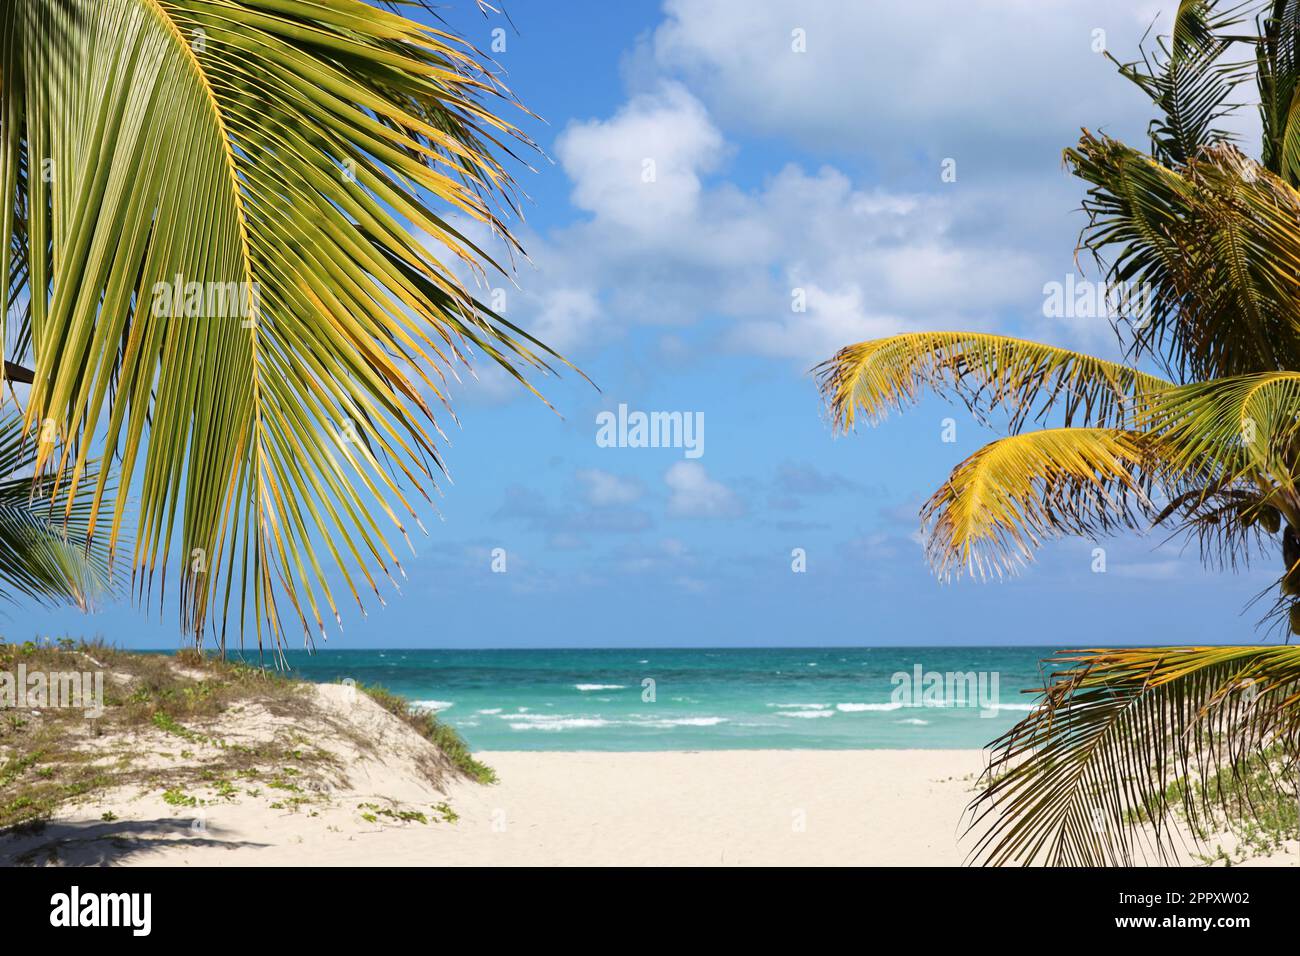 Vista pittoresca sulla spiaggia tropicale con sabbia bianca e palme da cocco. Resort turistico sull'isola dei Caraibi Foto Stock